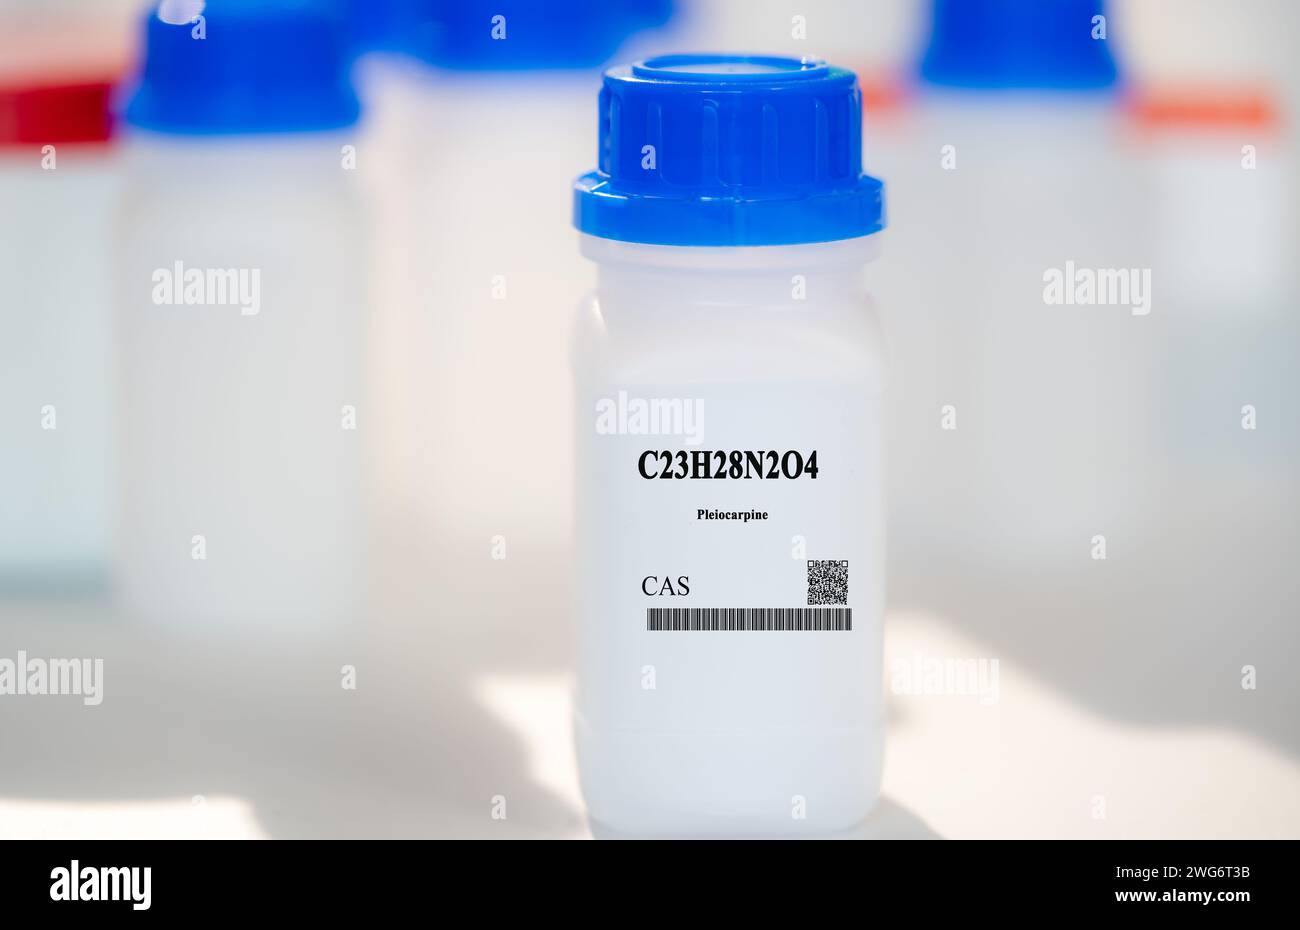 C23H28N2O4 Pleiocarpine CAS sustancia química en envases de laboratorio de plástico blanco Foto de stock